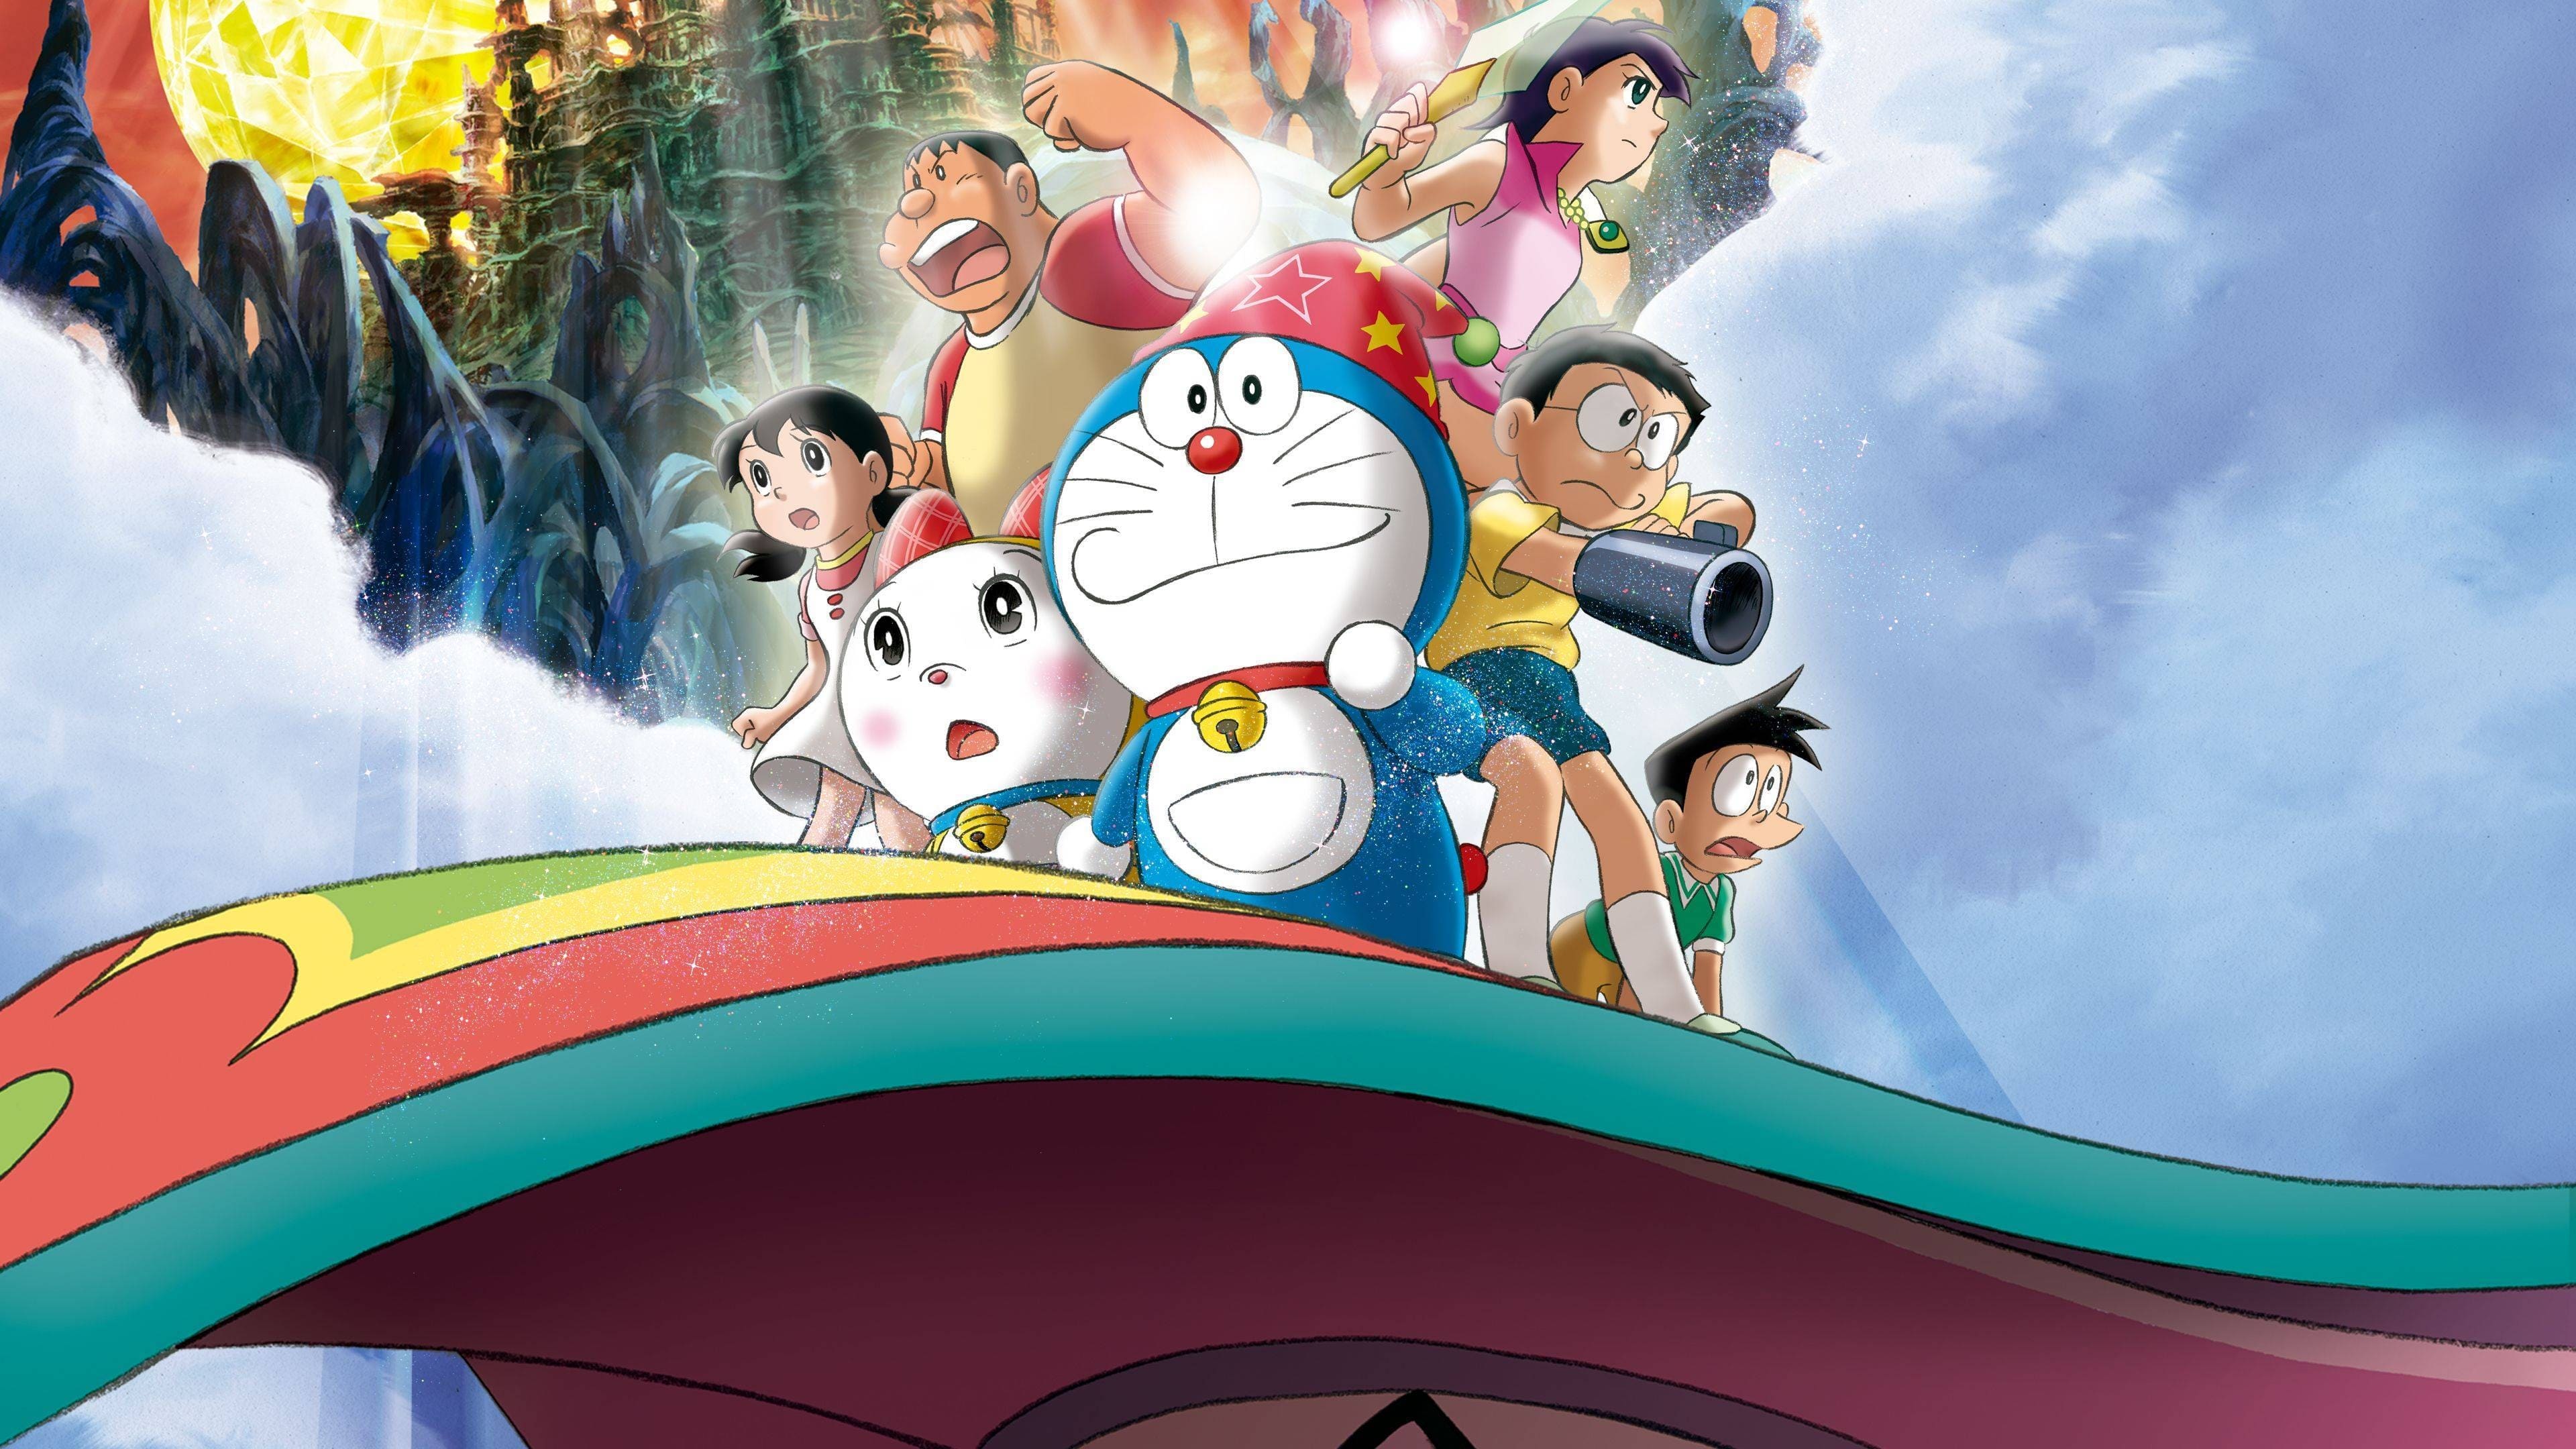 Doraemon: Nobita no Shin Makai Daibôken